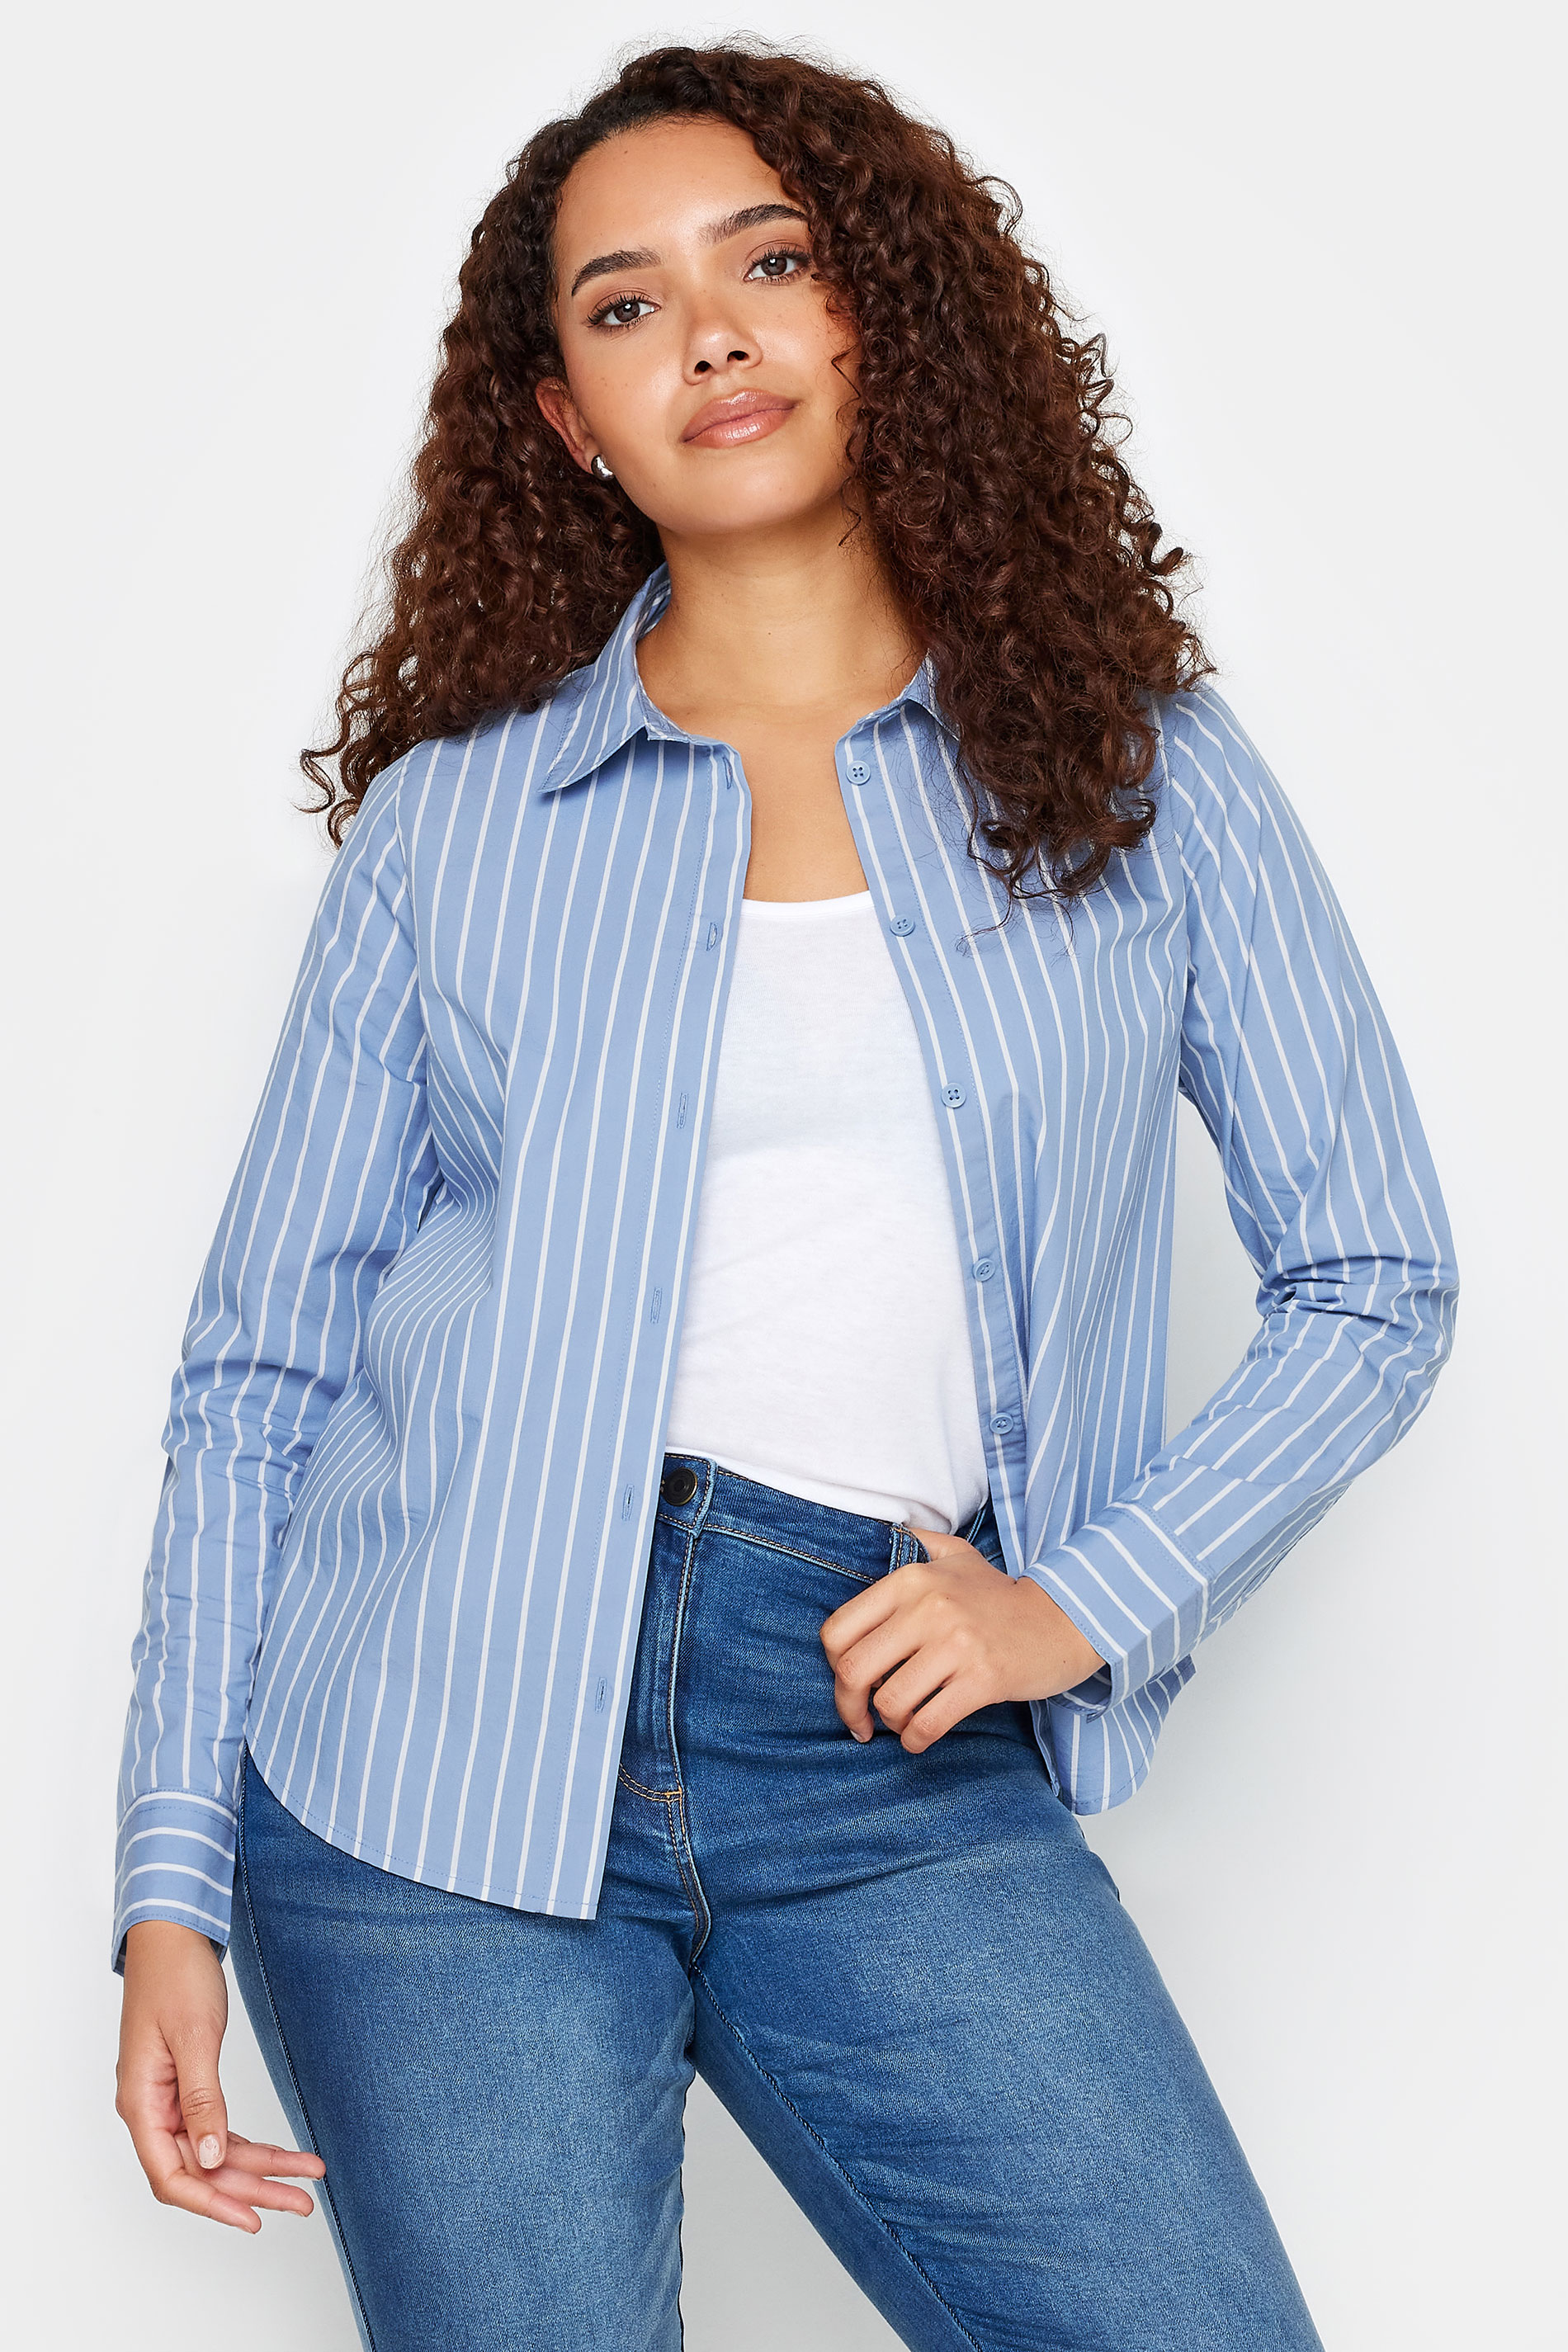 M&Co Blue & White Striped Cotton Poplin Shirt | M&Co 1